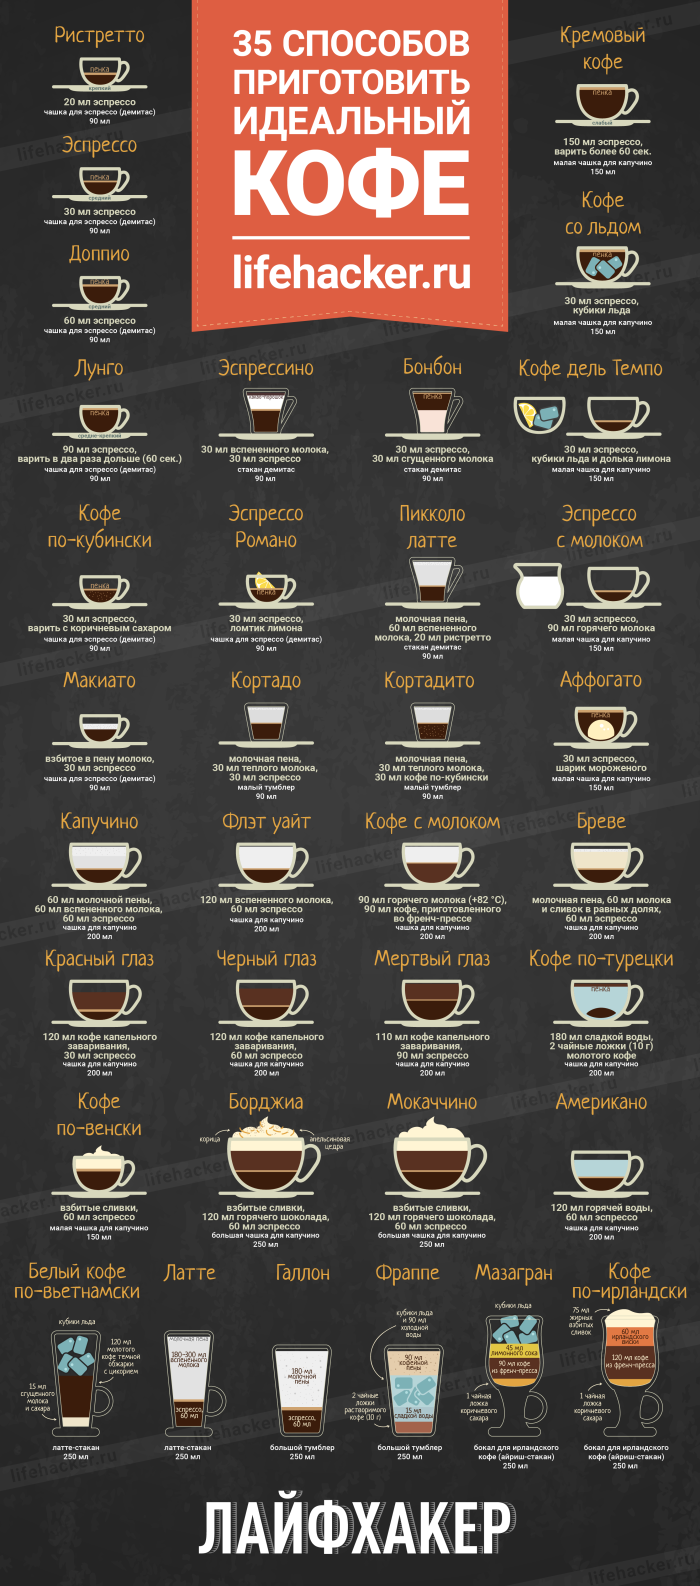 Кофе лунго: что это такое, рецепты его приготовления